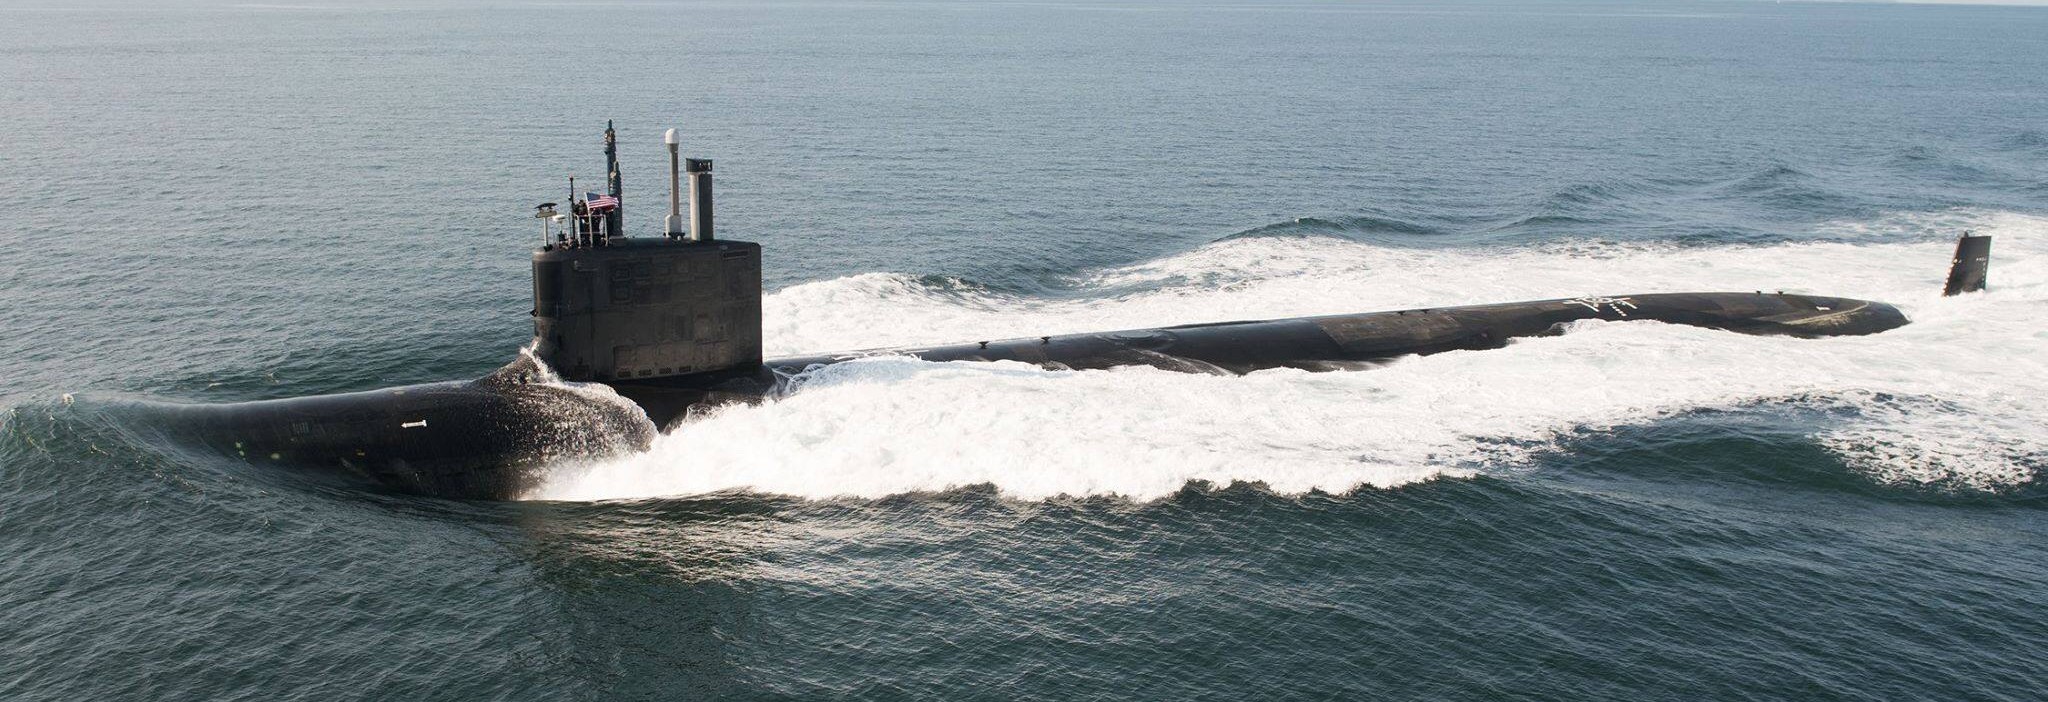 ssn-788 uss colorado virginia class attack submarine us navy 24 trials gdeb